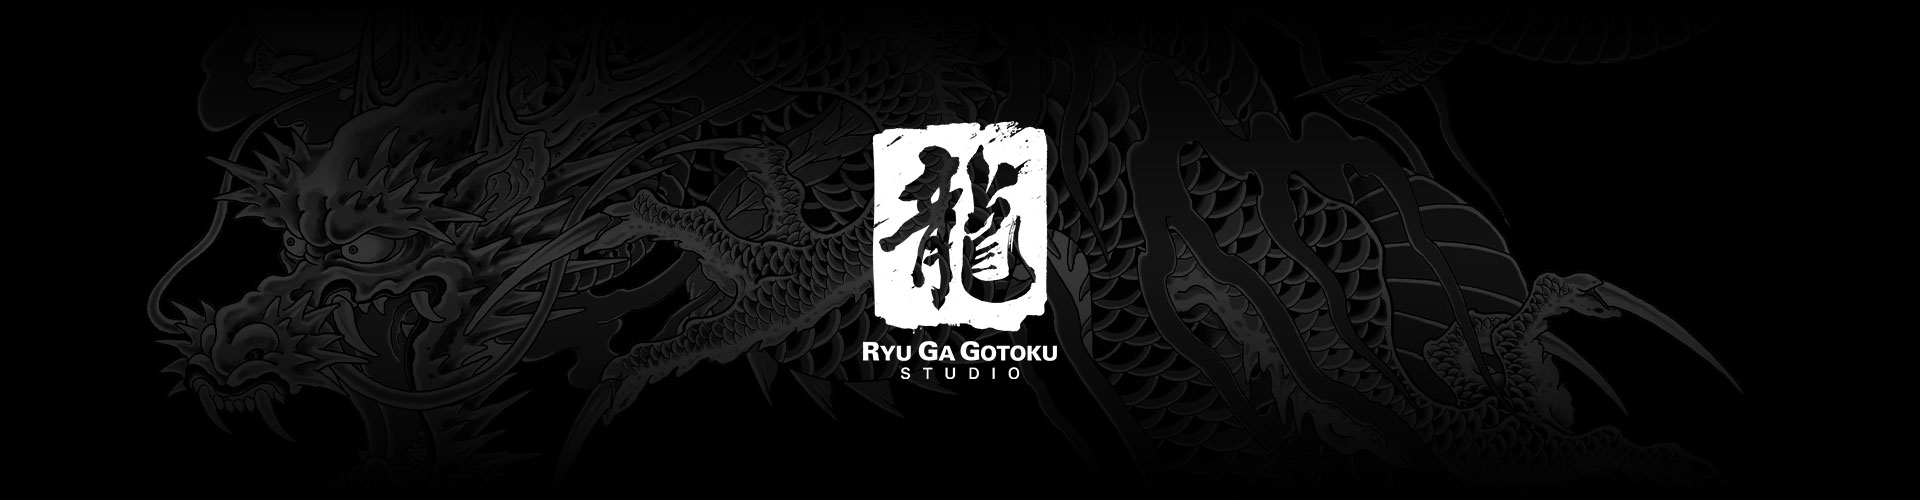 Logo Ryu Ga Gotoku Studio z szarym tatuażem smoka w tle.